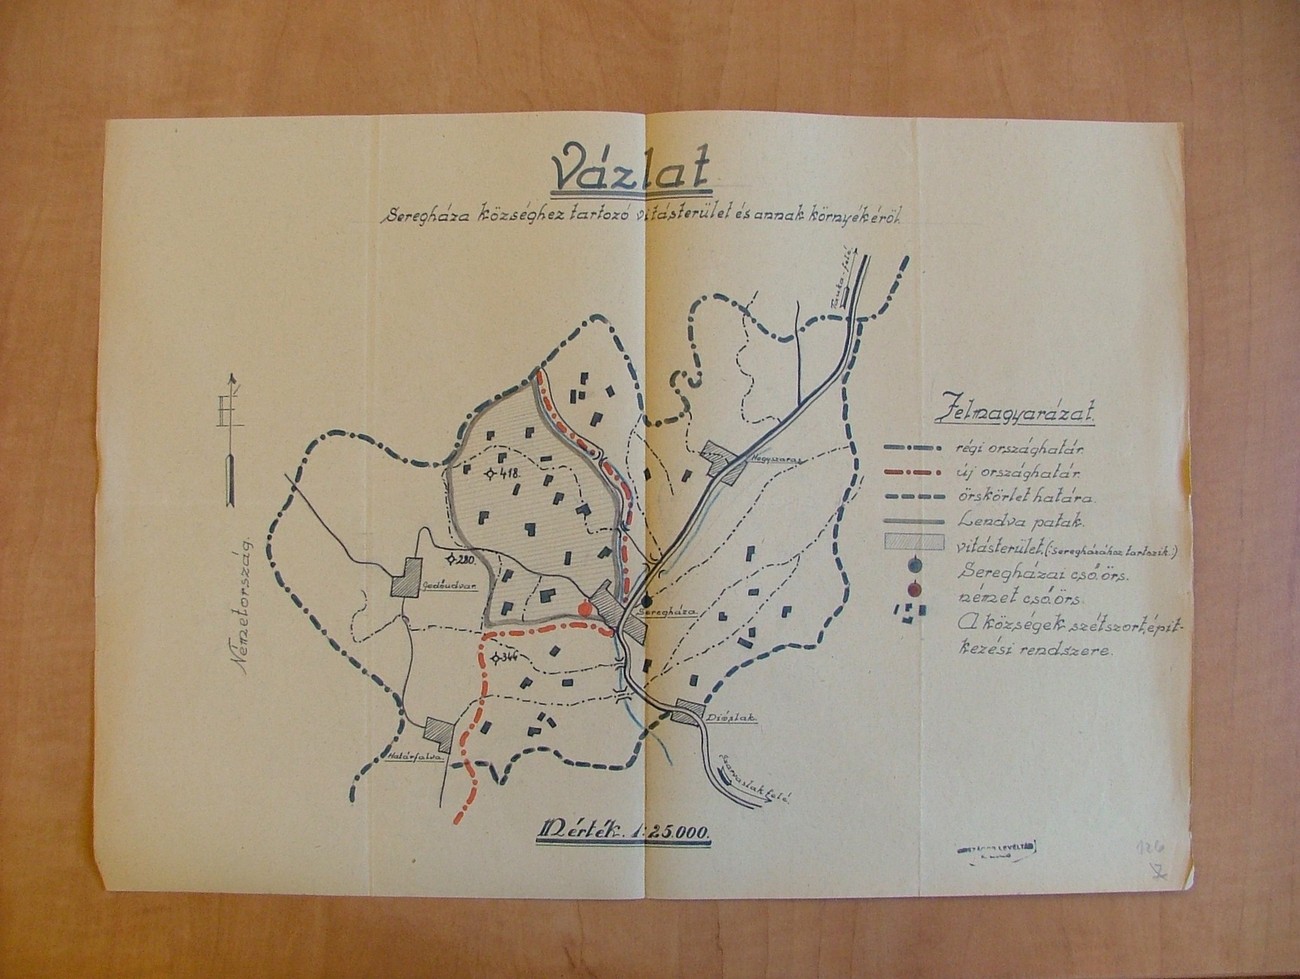 16. aprila 1941 so Nemci oblast v Prekmurju predali Madžarom, razen v štirih naseljih na severozahodu pokrajine. Na skici je nemško-madžarska meja pri naselju Serdica (Seregháza), z vrisanim spornim območjem (vitás terület). V Serdici je bila meja po reki Ledavi. Na mostu med dvema deloma vasi jo je nemški oficir začrtal kar s škornjem, predmet spora pa je bil mlin na madžarski strani vasi, ki je bil v nemški lasti. Prehodi meje in omejen prenos dobrin so bili mogoči, a ob strogi nemški kontroli. Niso pa smeli kupčevati z živino, ki je morala biti označena (D za Nemčijo in U za Madžarsko). MNL OL K-64 - 1942 - 41.(96. cs.).